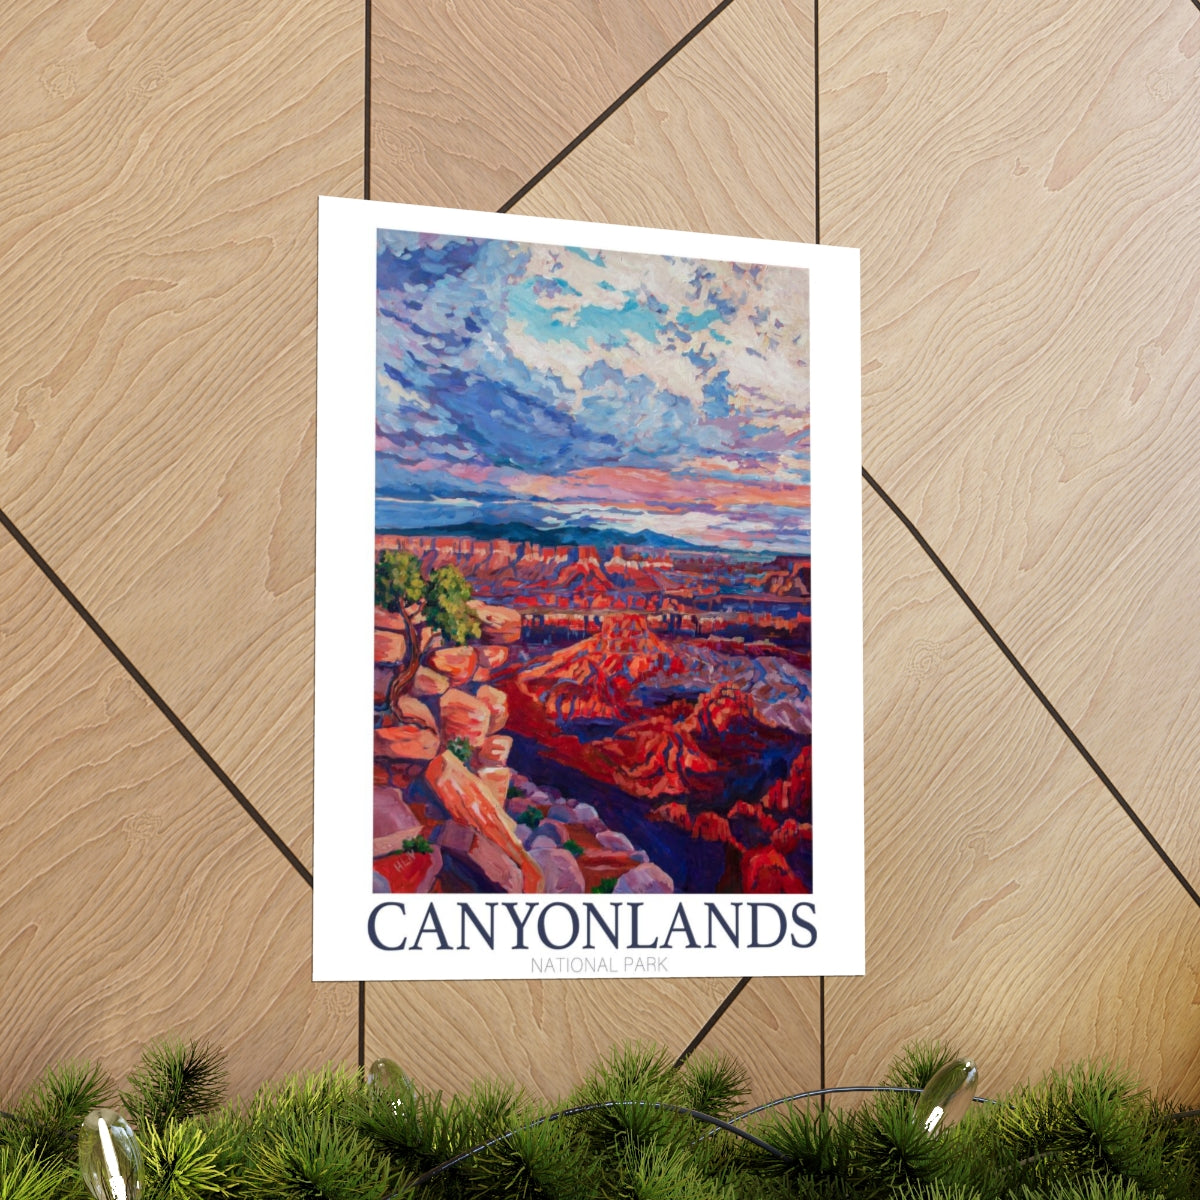 *Canyonlands National Park Matte Vertical Poster